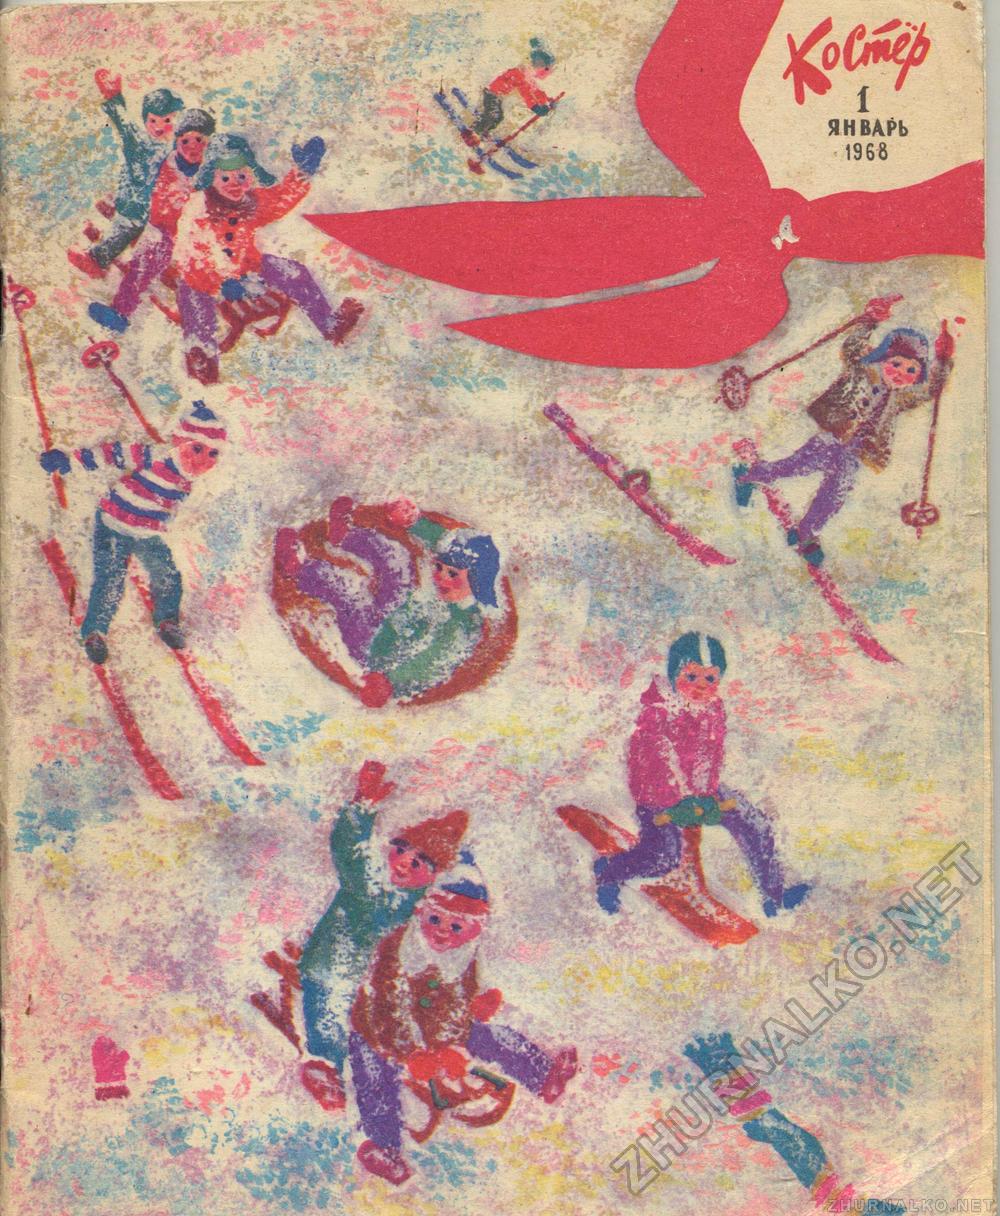  1968-01,  1